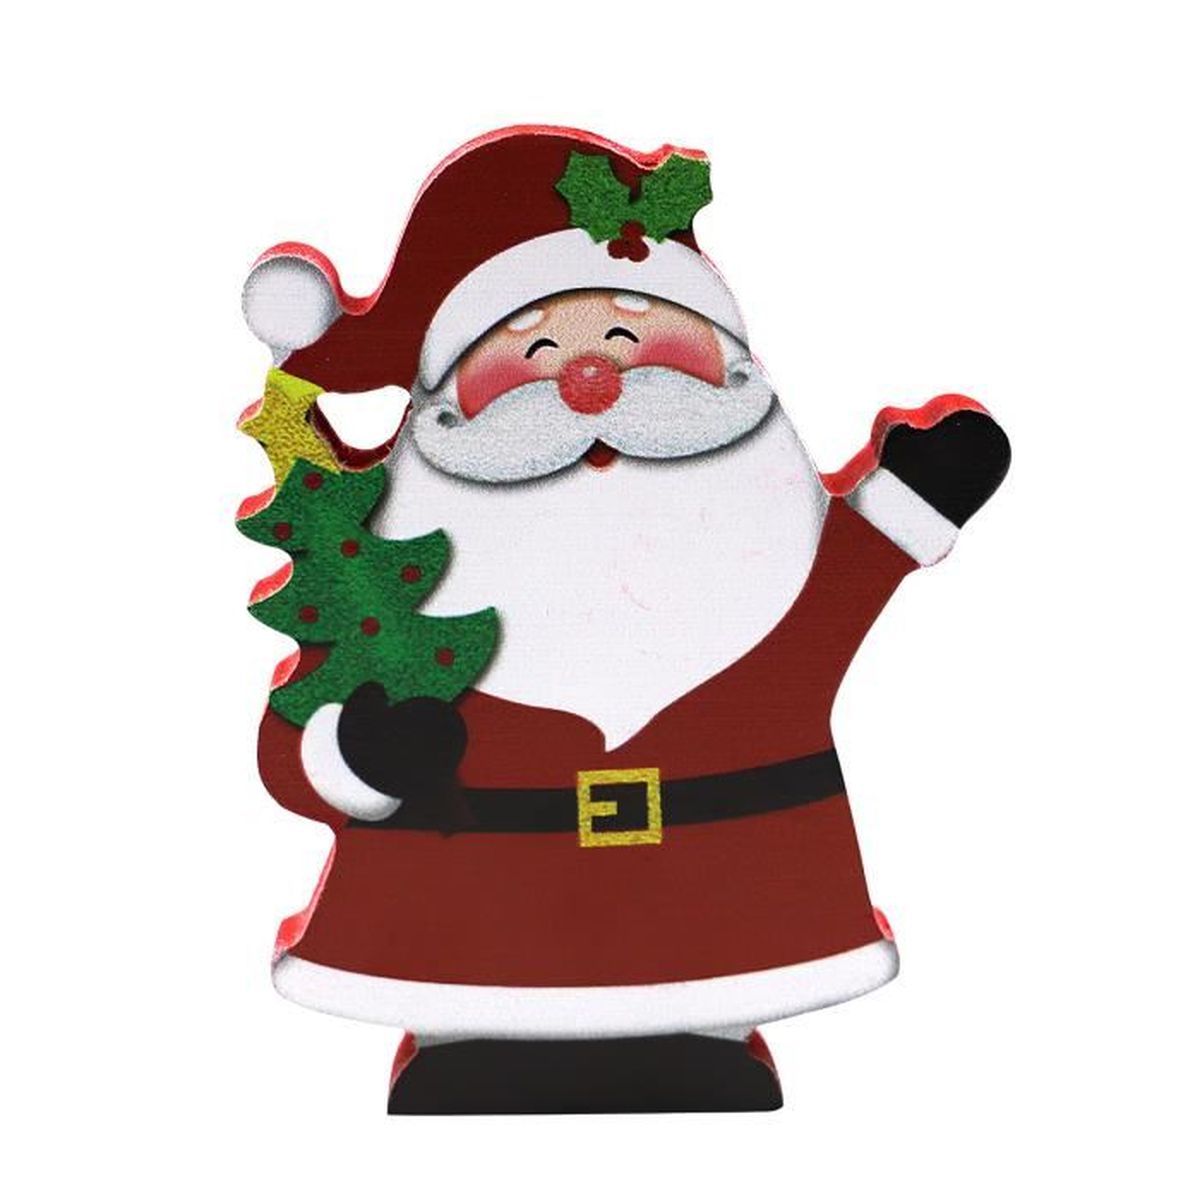 Décoration Déco Père Noël Père Noël Santa Claus 22 cm bois personnage Cadeau